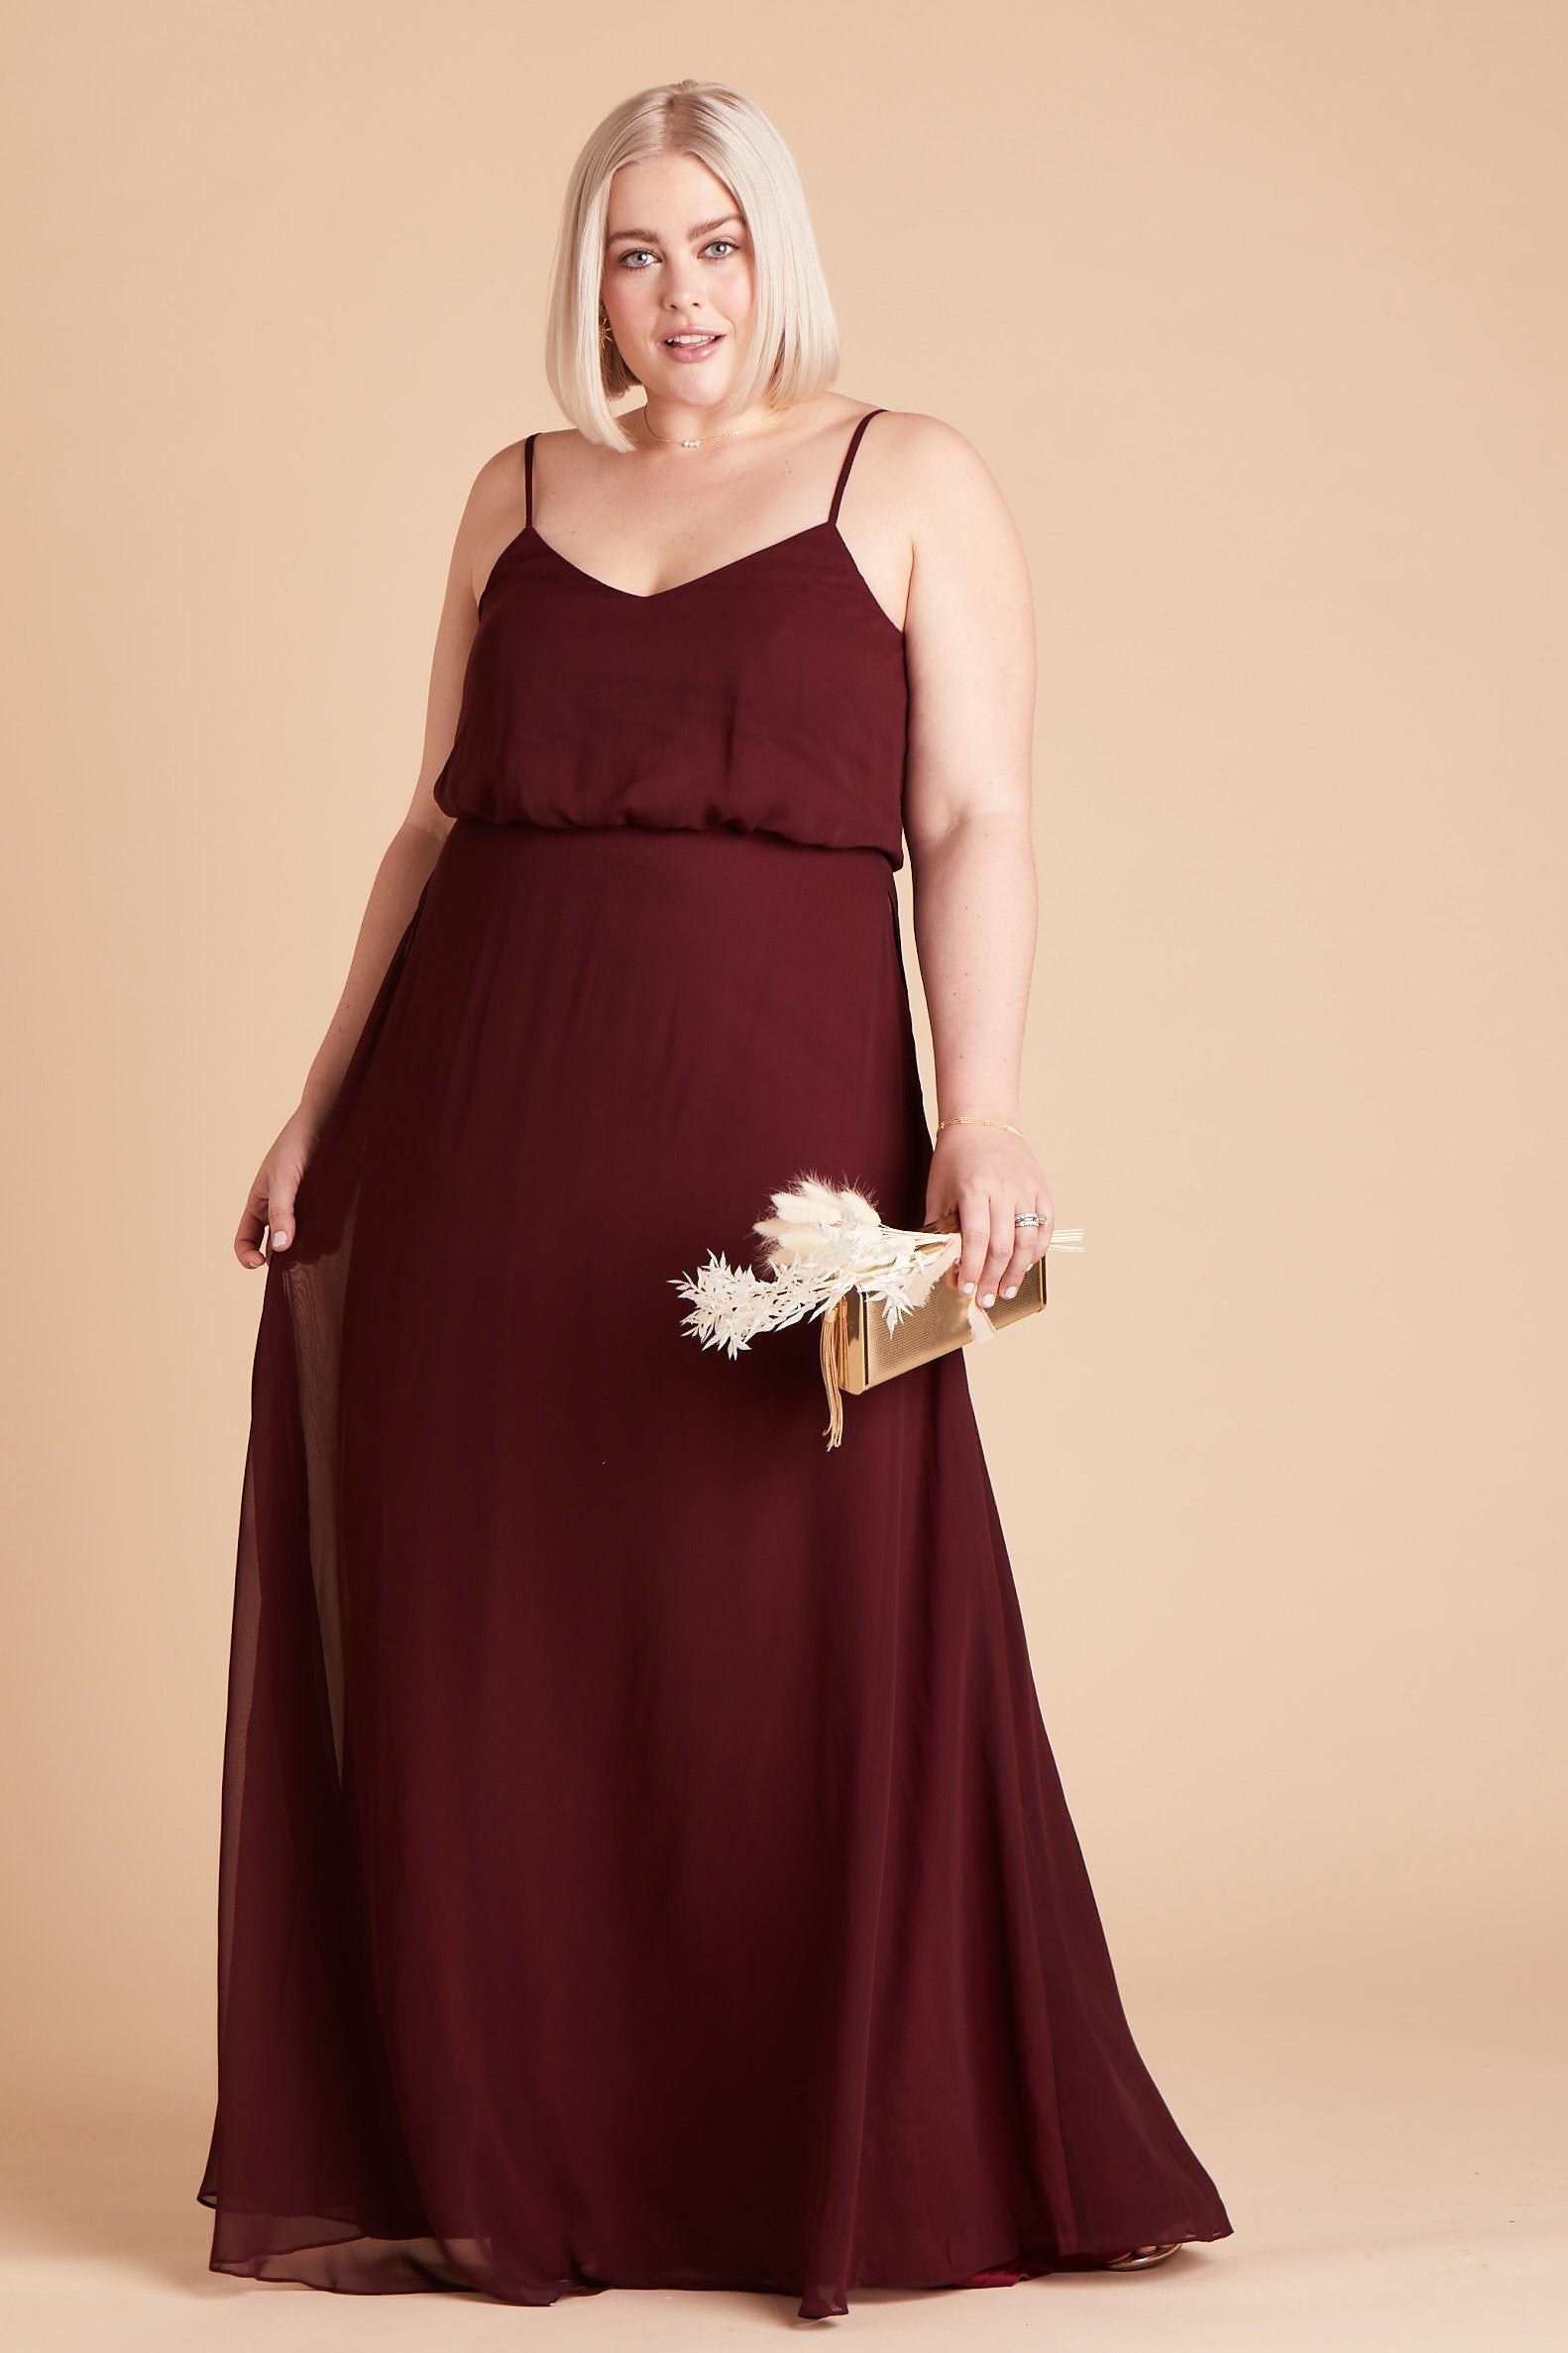 Gwennie plus size bridesmaid dress in cabernet burgundy chiffon by Birdy Grey, front view